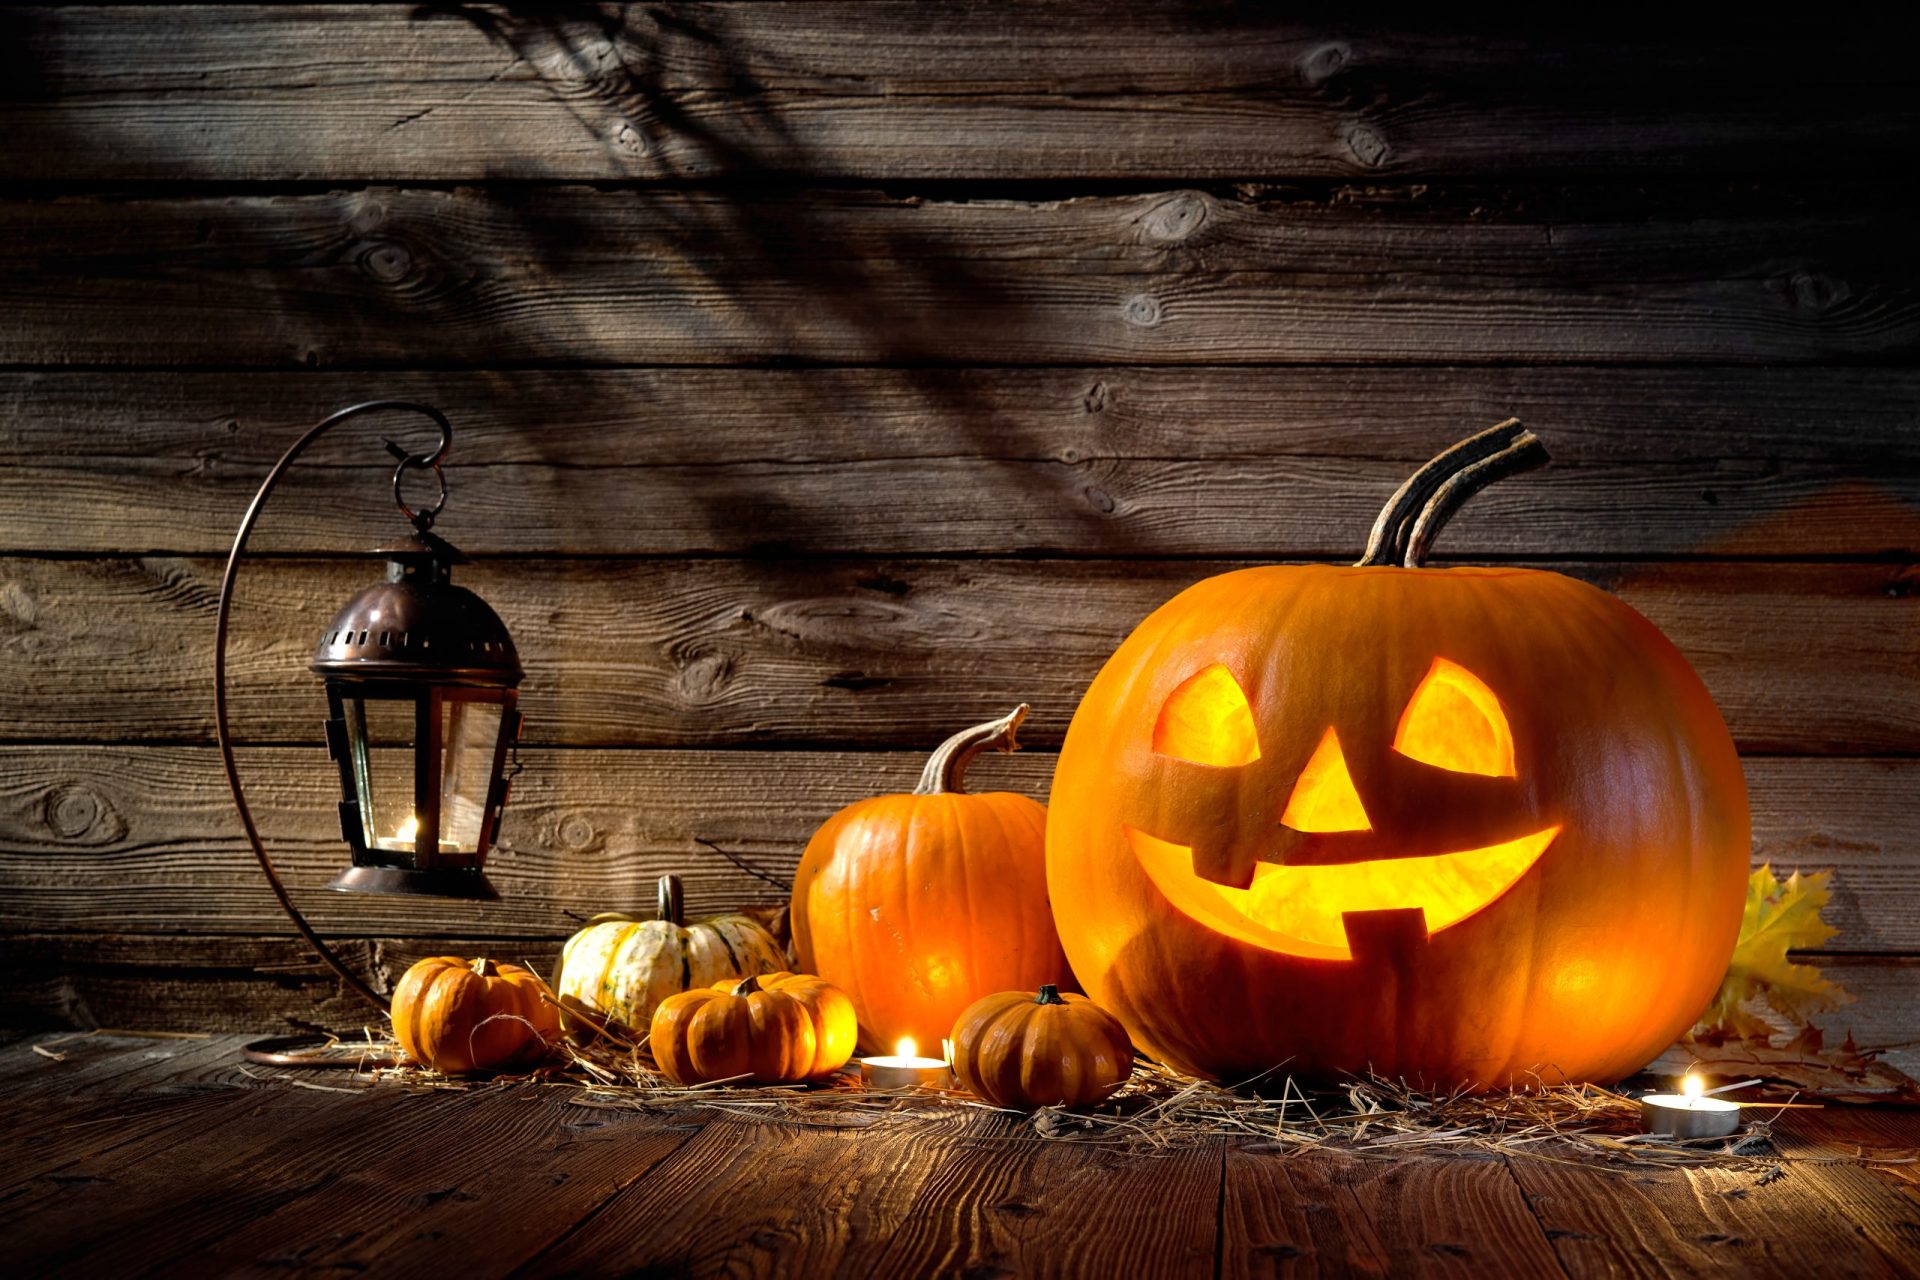 EUA: Vizinhos confundem cadáver com decoração de Halloween